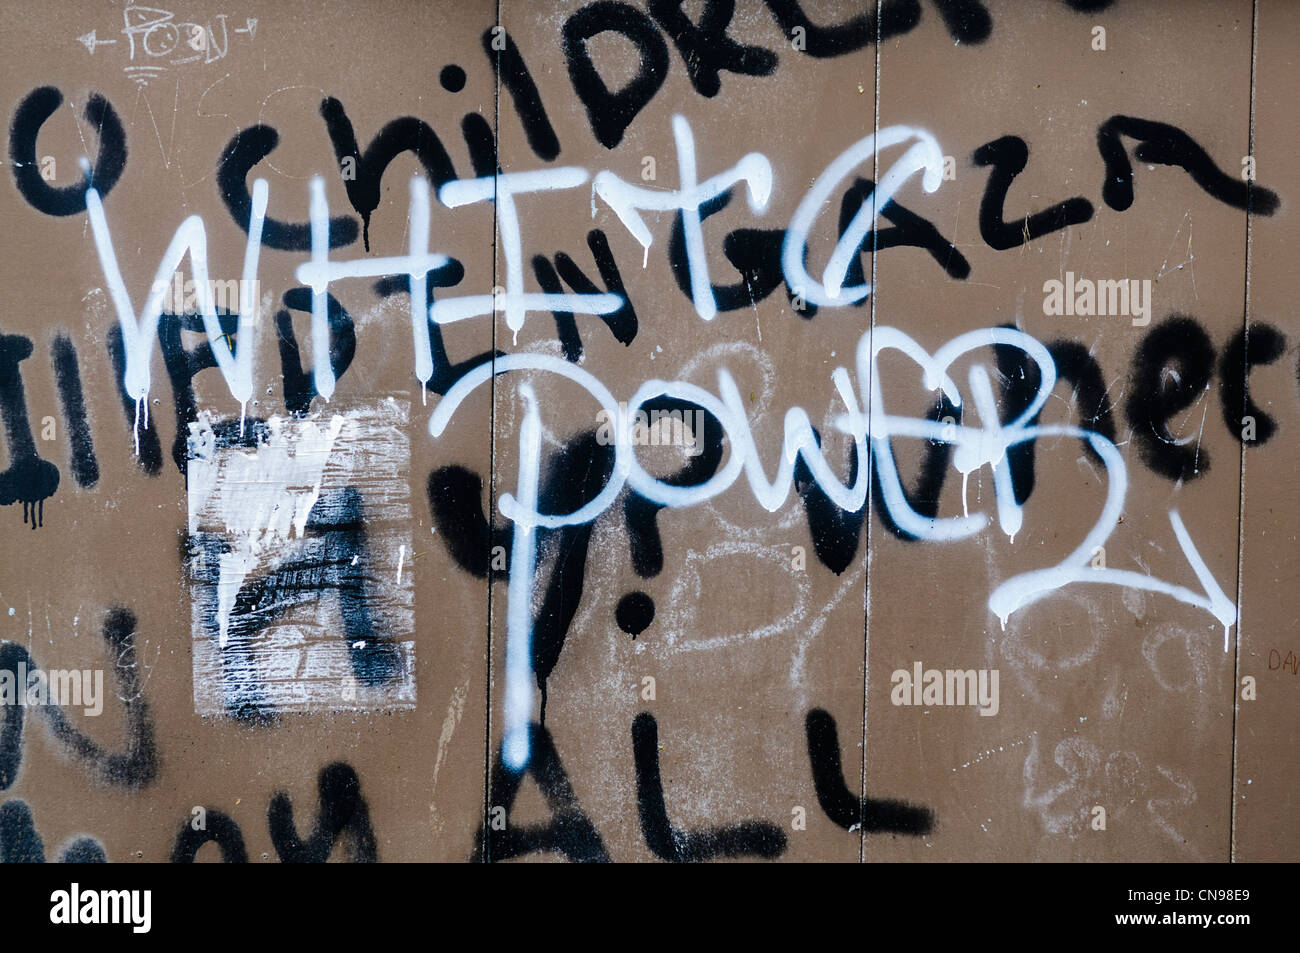 Rassistische Graffiti sagt "White Power" Stockfoto